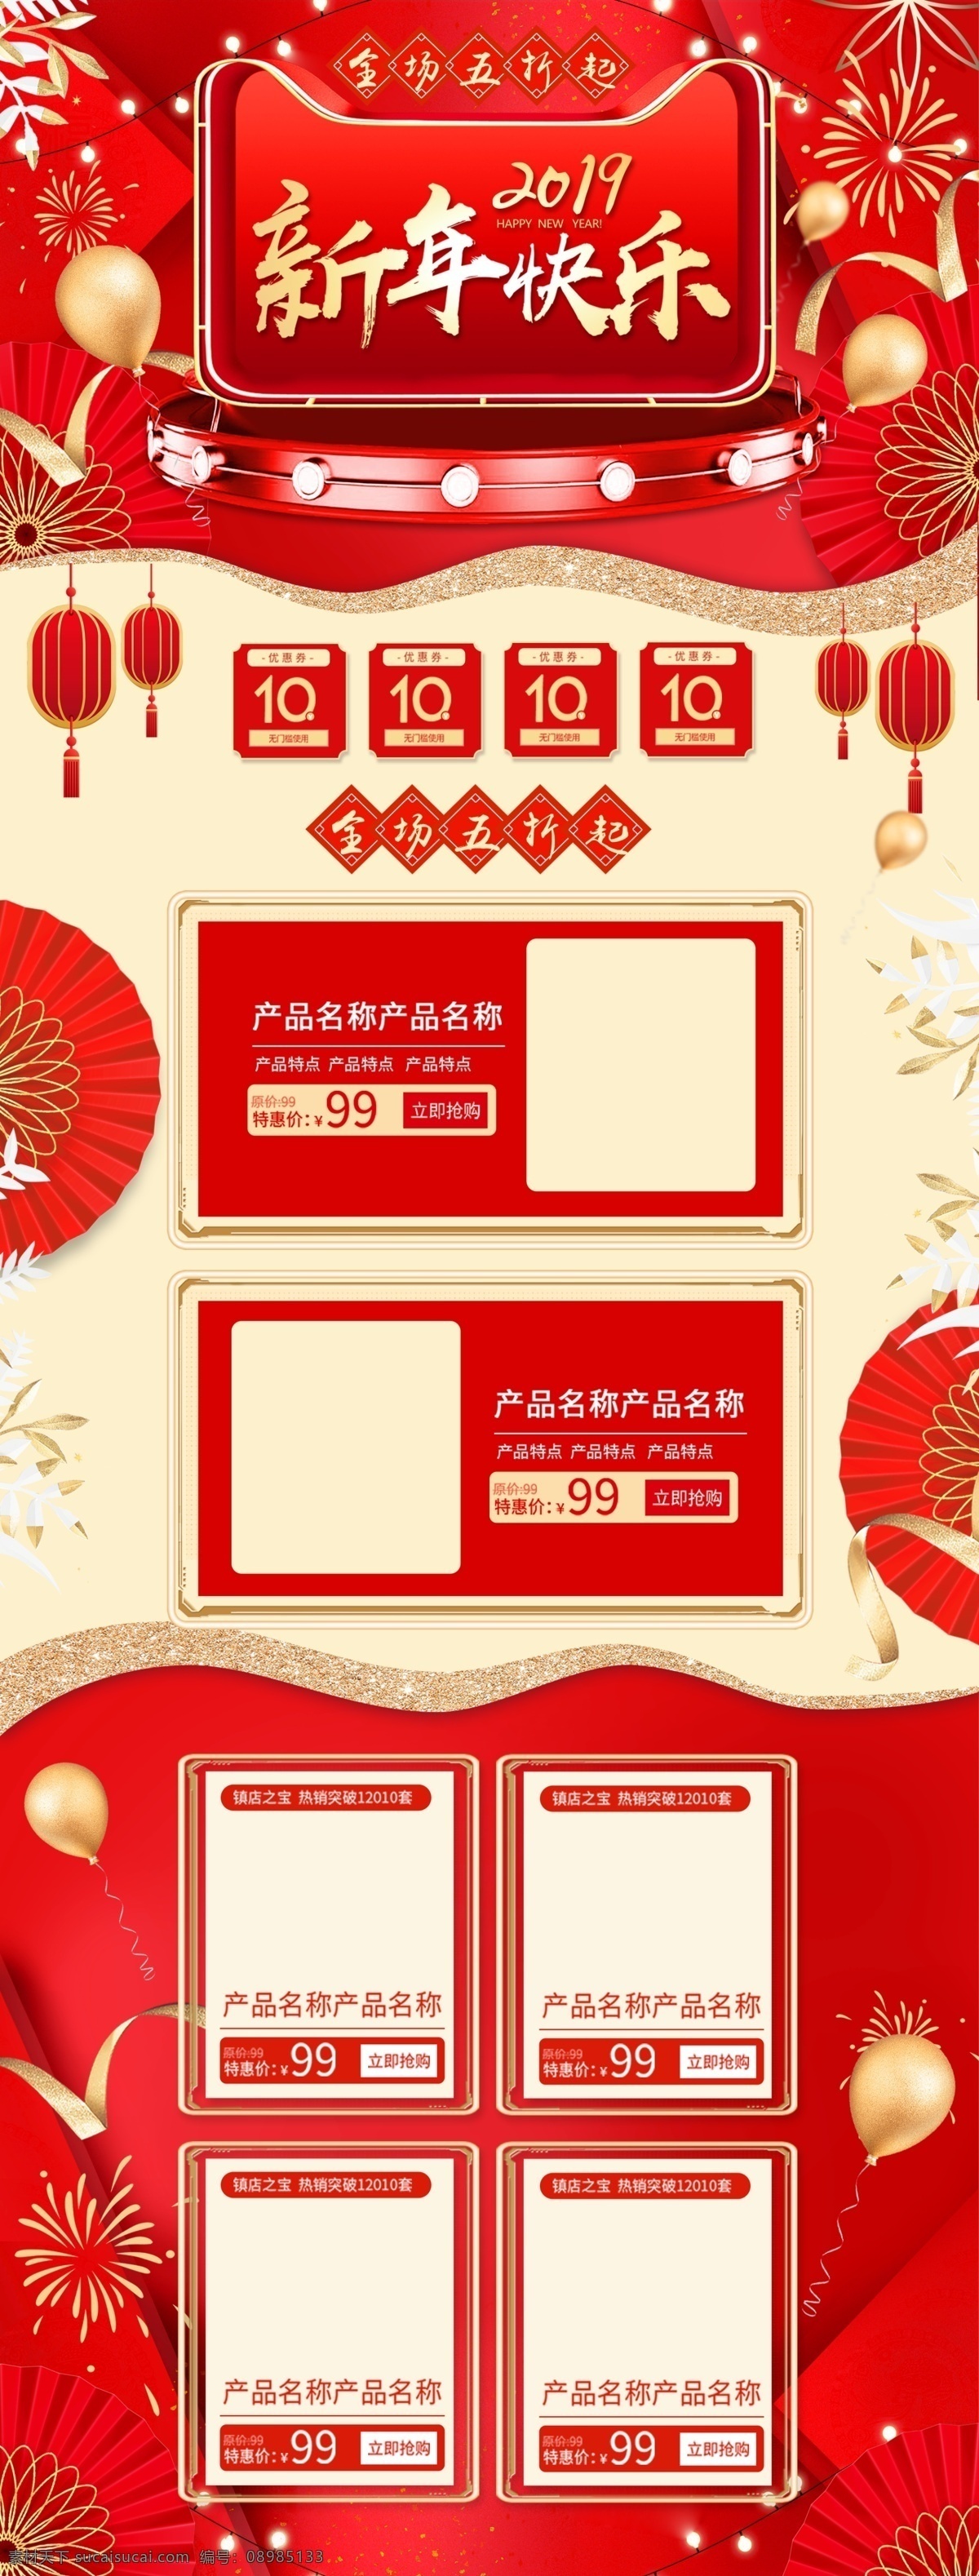 红色 喜庆 2019 新春 新年 快乐 淘宝 首页 促销 猪年 年货节